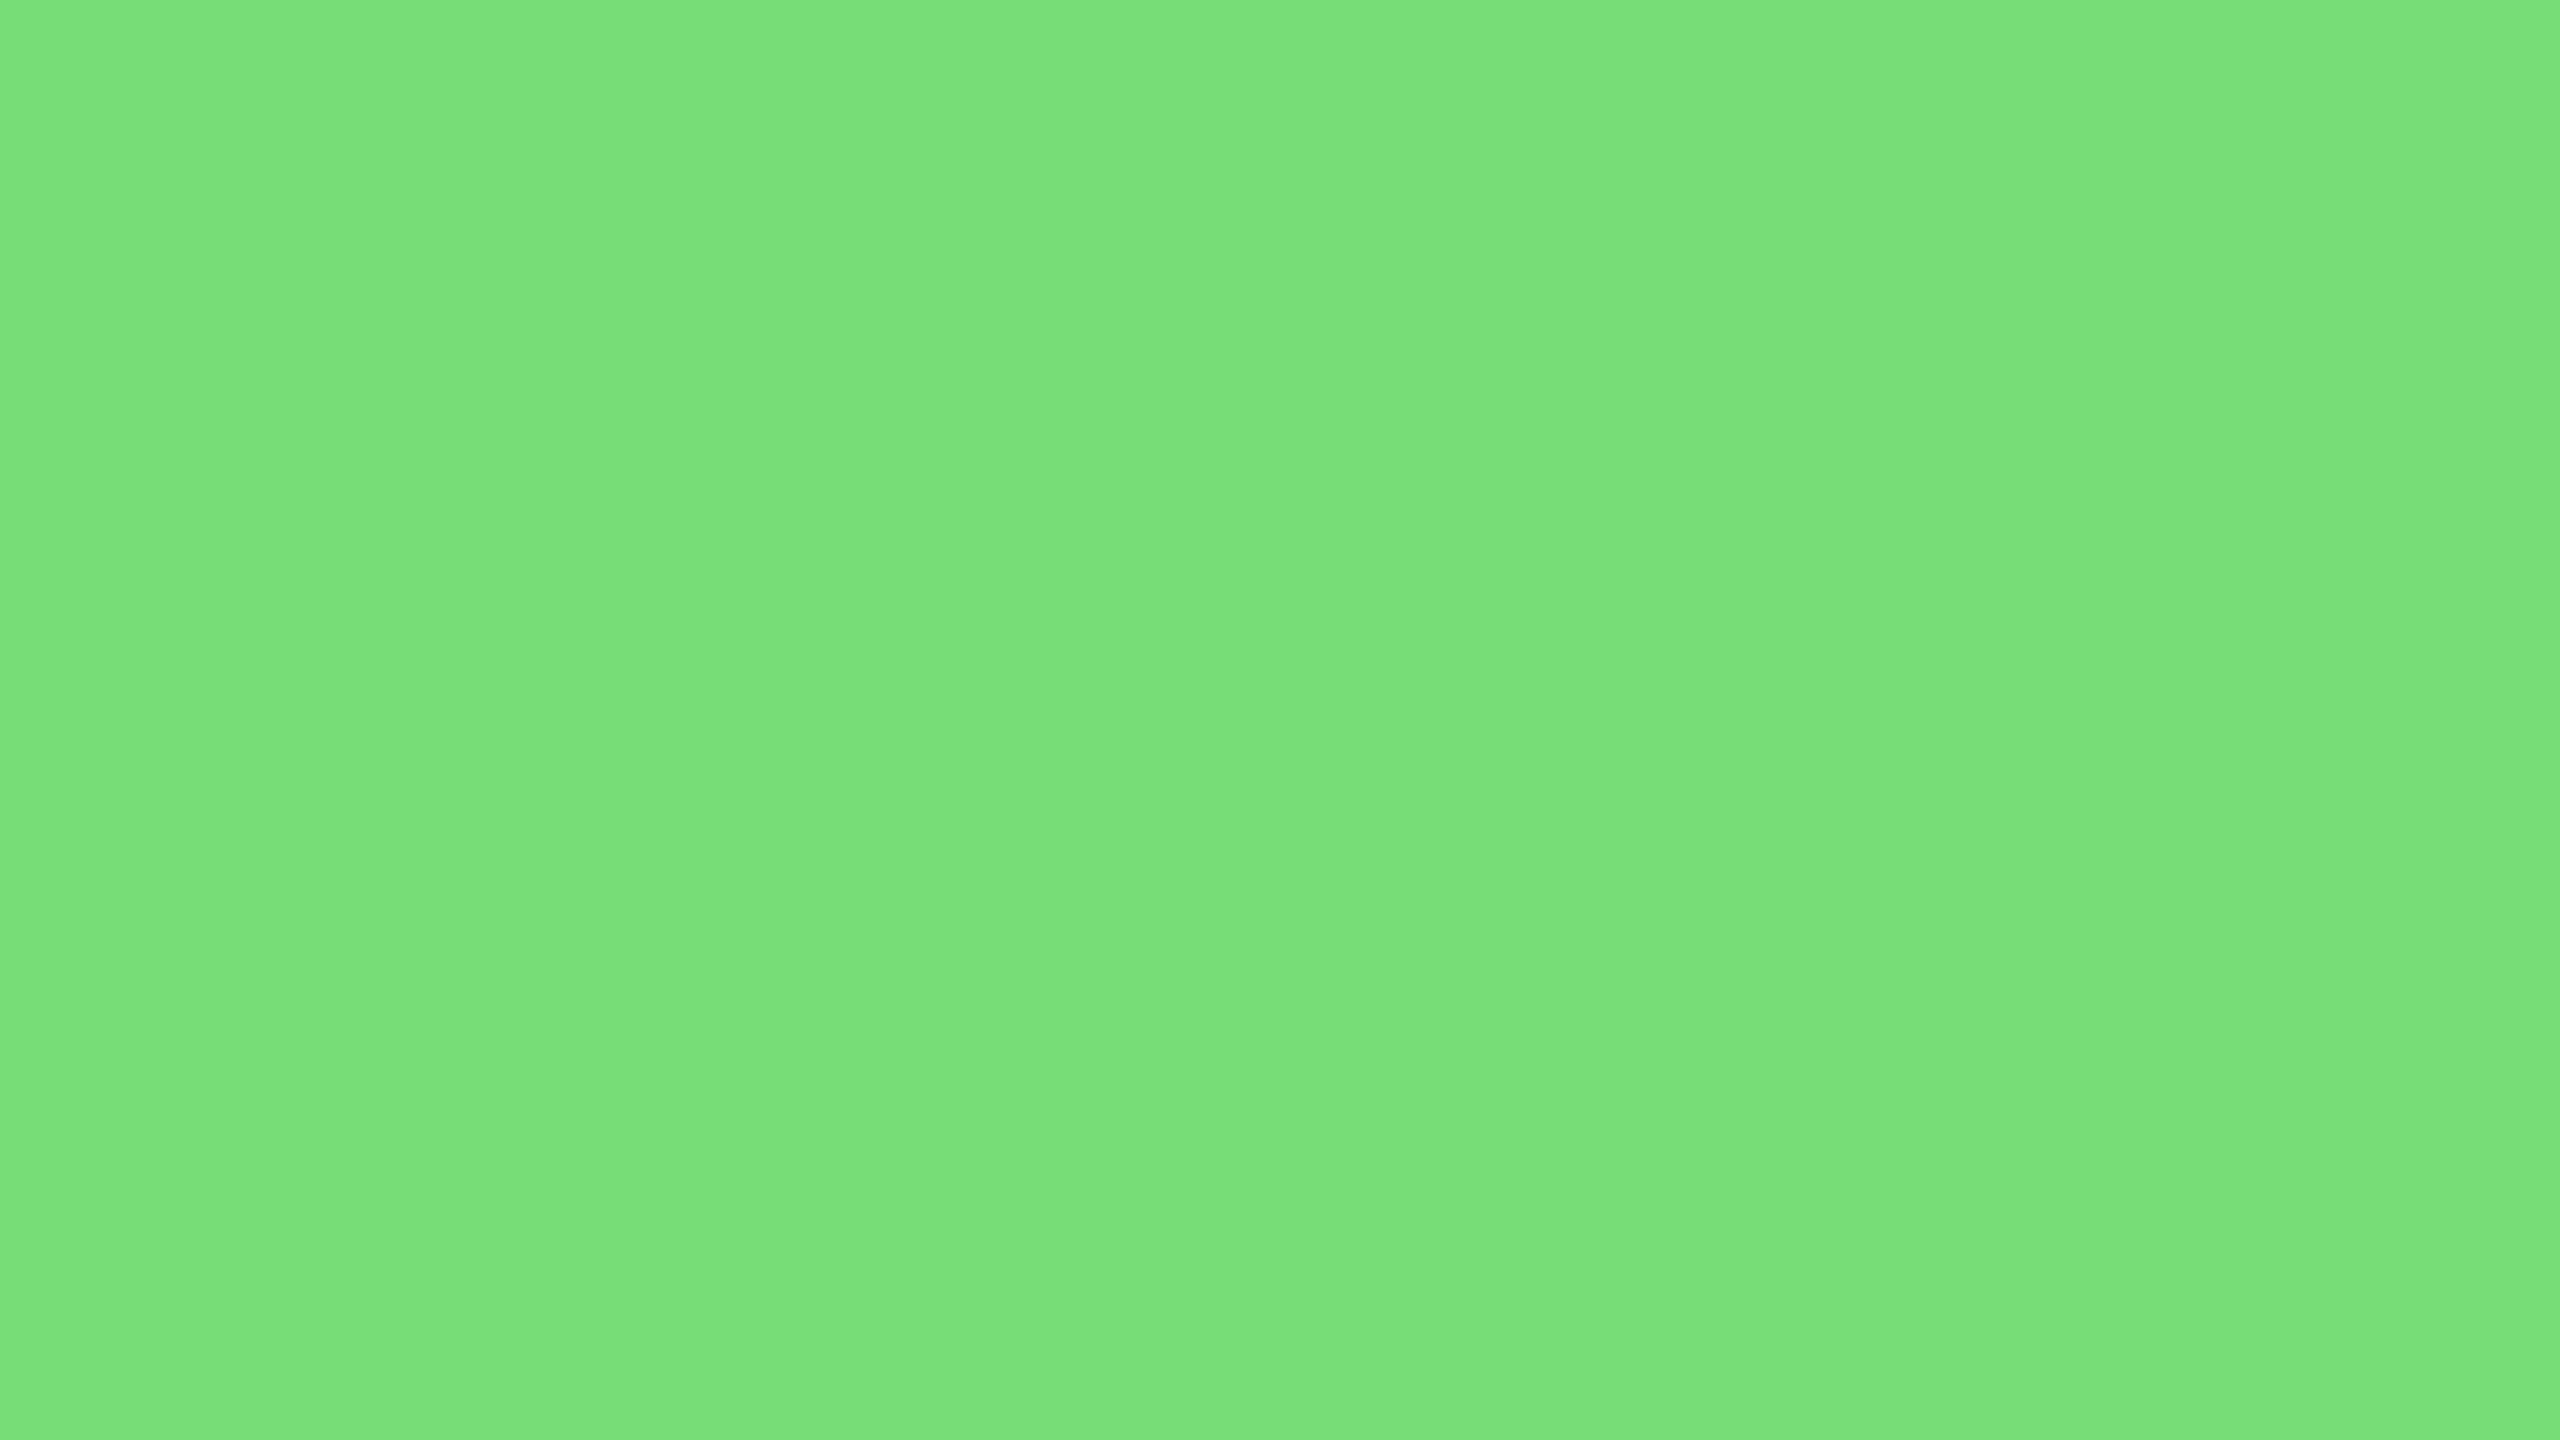 Nền xanh lá cây pastel (Pastel green background):
Bức tranh với nền xanh lá cây pastel mang lại cảm giác nhẹ nhàng và thư thái. Với màu sắc này, người xem có thể đắm mình trong thiên nhiên xanh mát và tìm thấy sự bình an trong tâm hồn. Bức tranh này sẽ làm bạn cảm thấy thư giãn và có trải nghiệm tuyệt vời về một thế giới xanh.